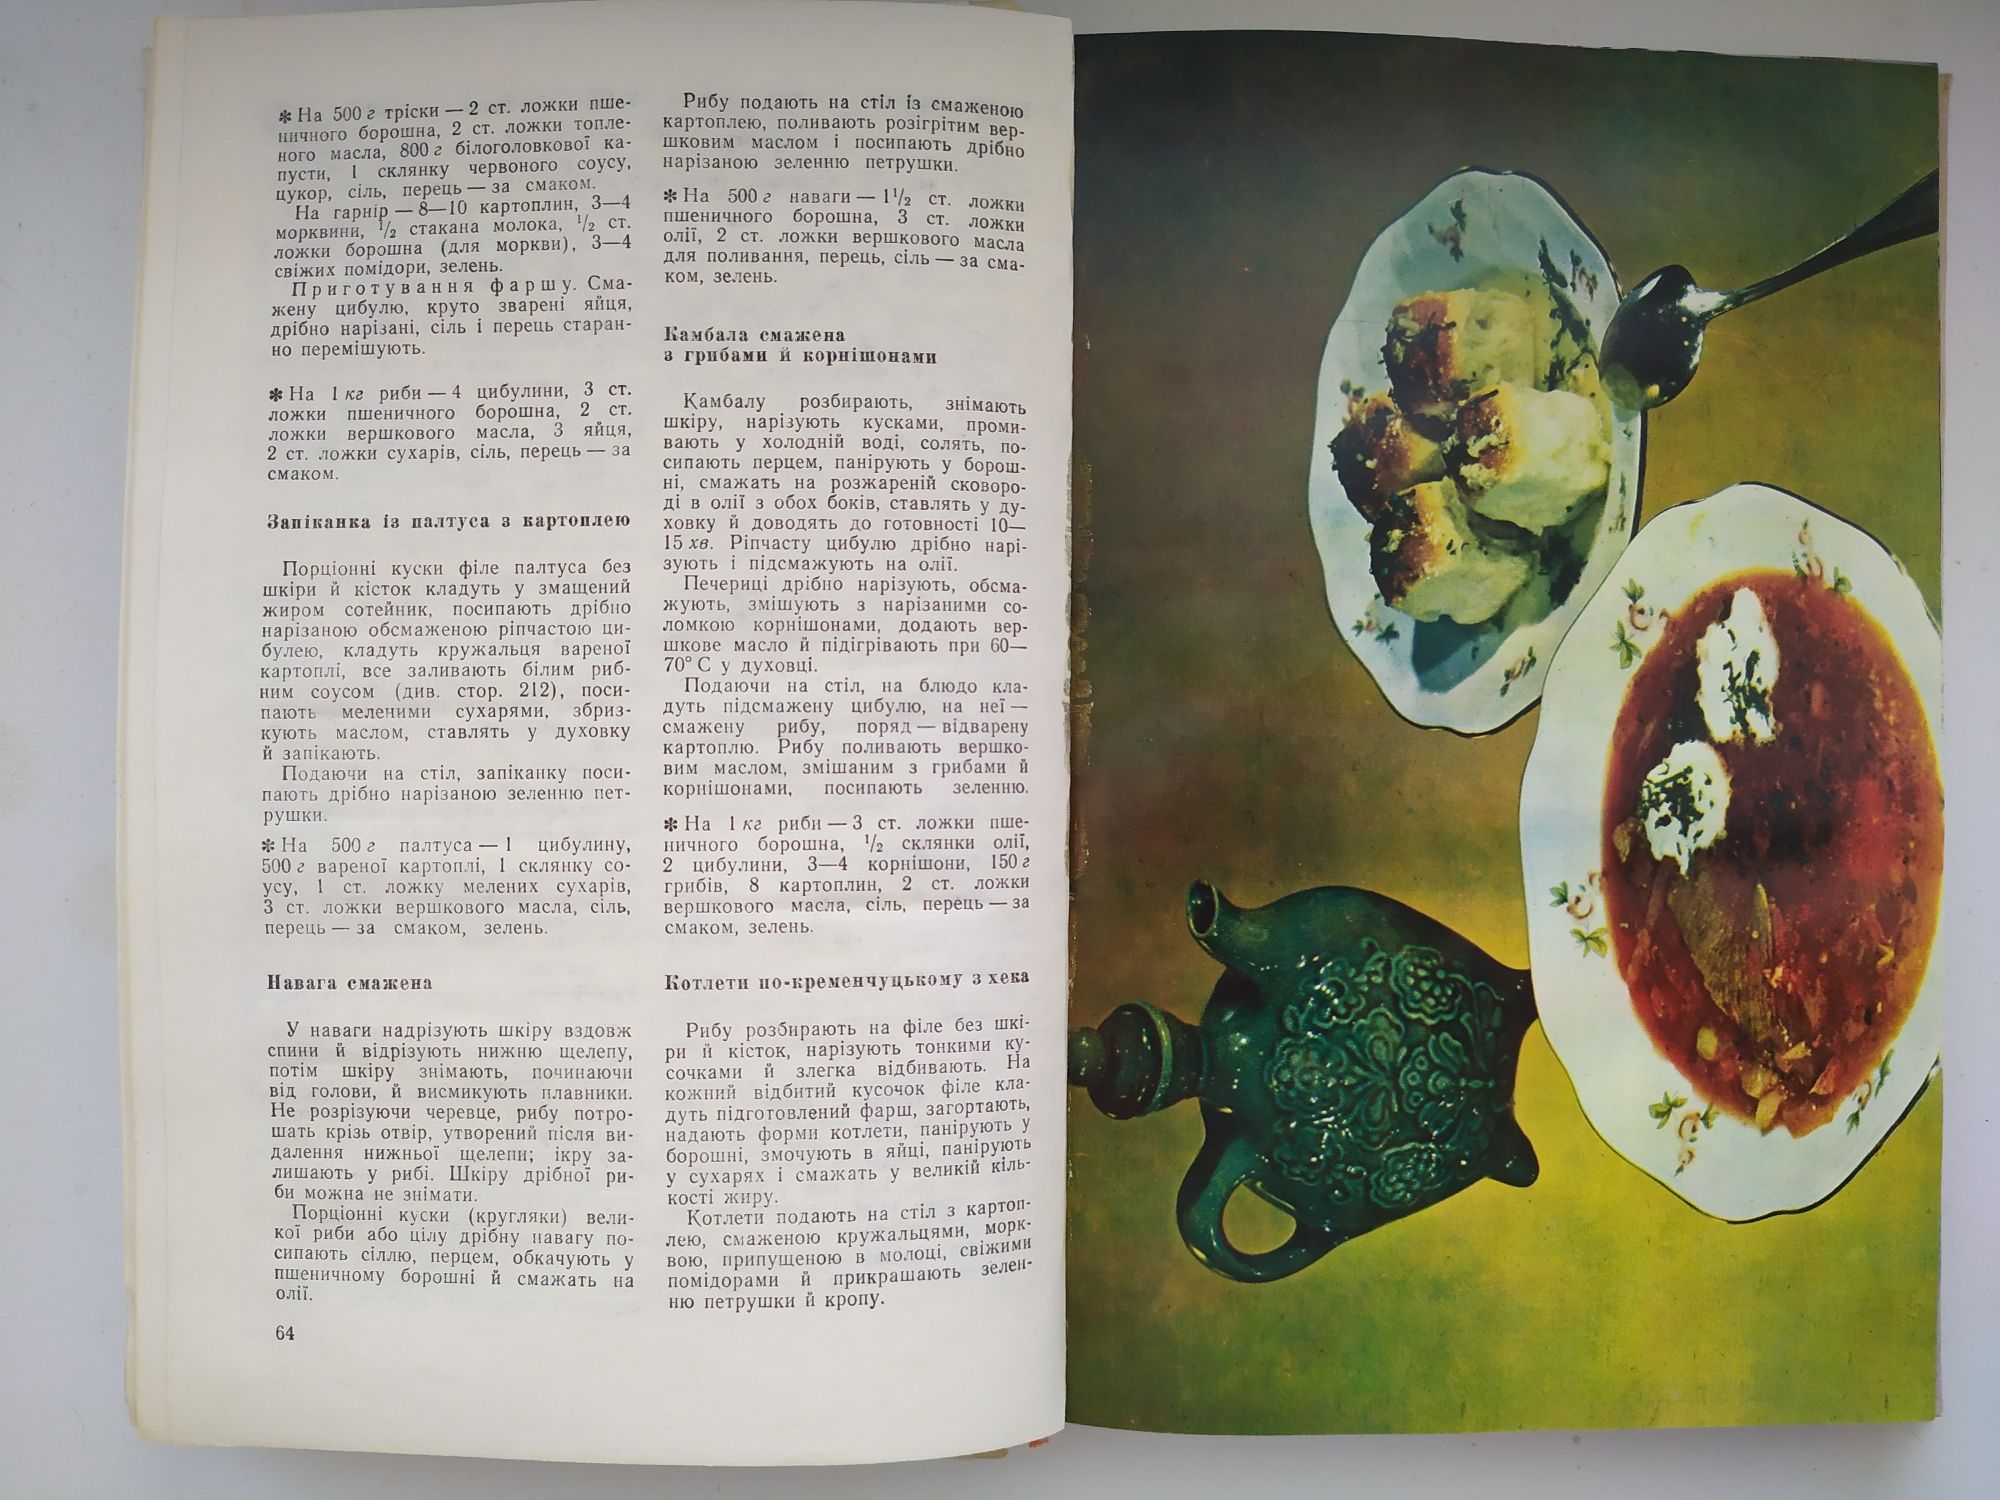 Сучасна українська кухня. Книга кулінарія 1974 р.